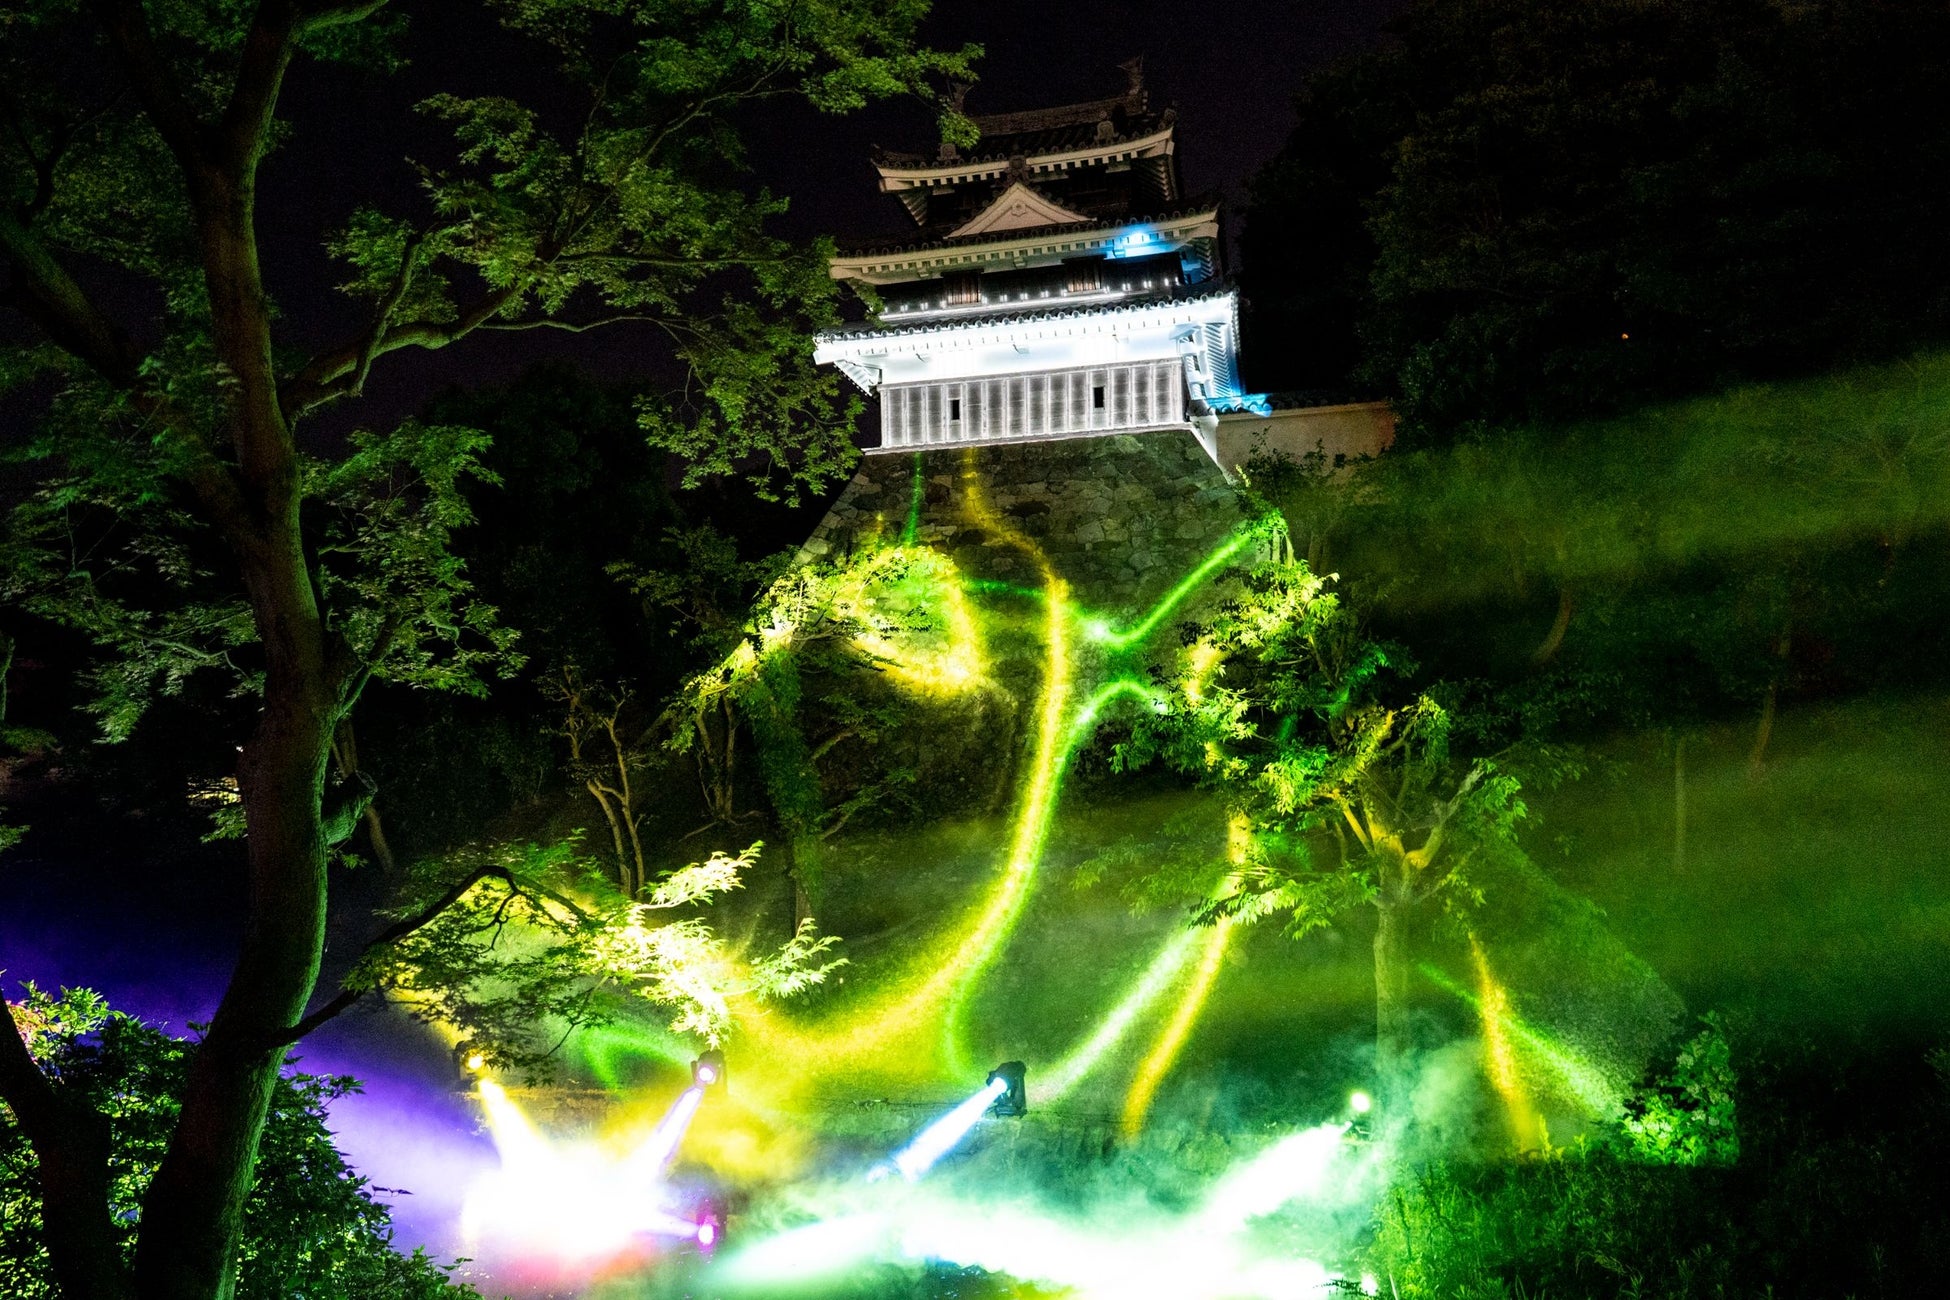 一旗プロデュース「西尾城 皐月絵巻2023 プロジェクションマッピング」の公式記録映像を公開。西尾市のシンボル・西尾城の夜を彩るプロジェクションマッピング。